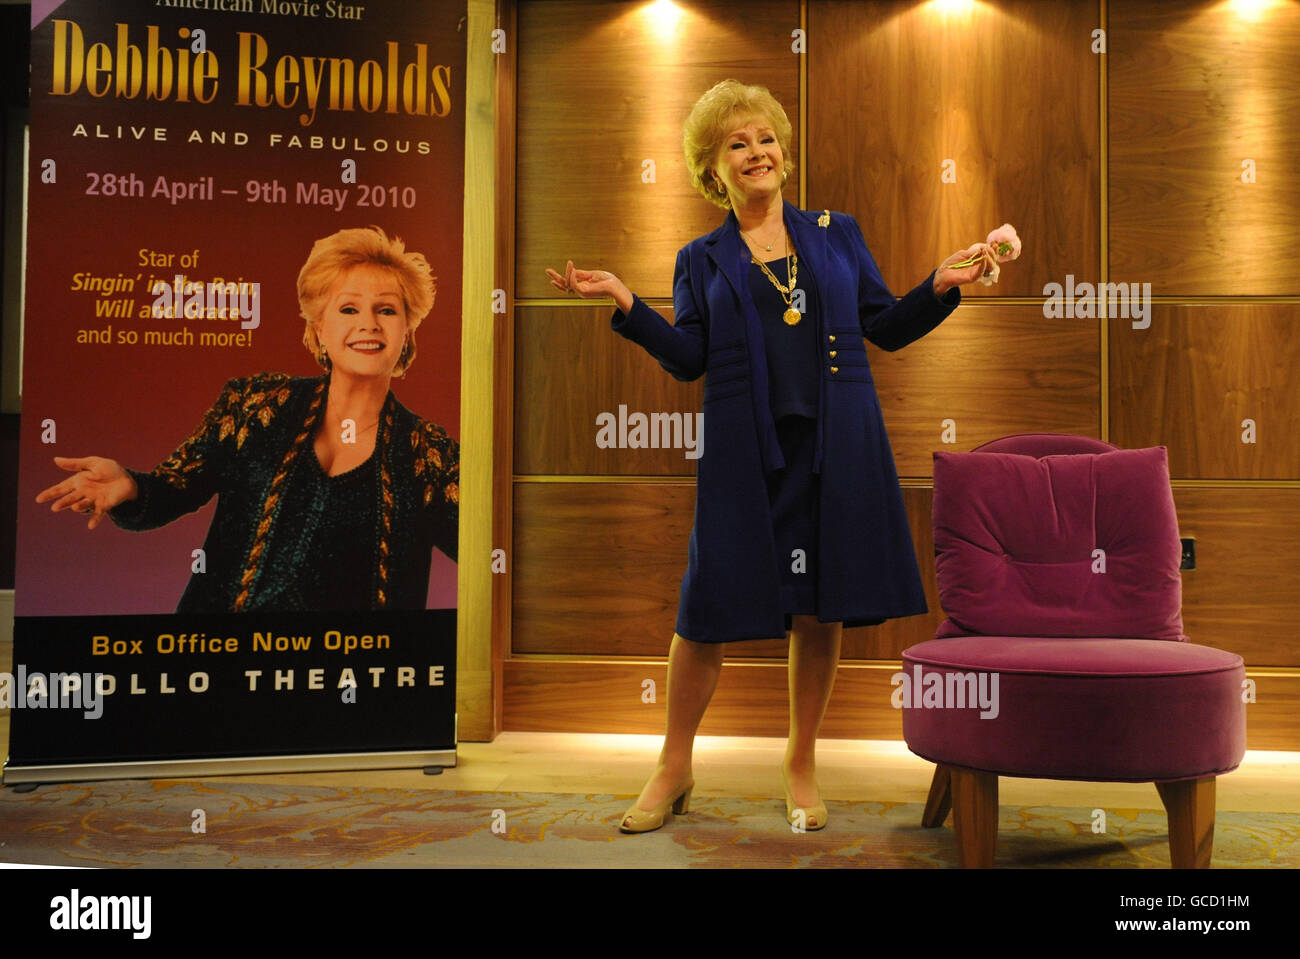 Hollywood-Schauspielerin Debbie Reynolds posiert in London für Bilder, als sie ihren 78. Geburtstag feiert und ihre erste UK-Tour ankündigt. Stockfoto